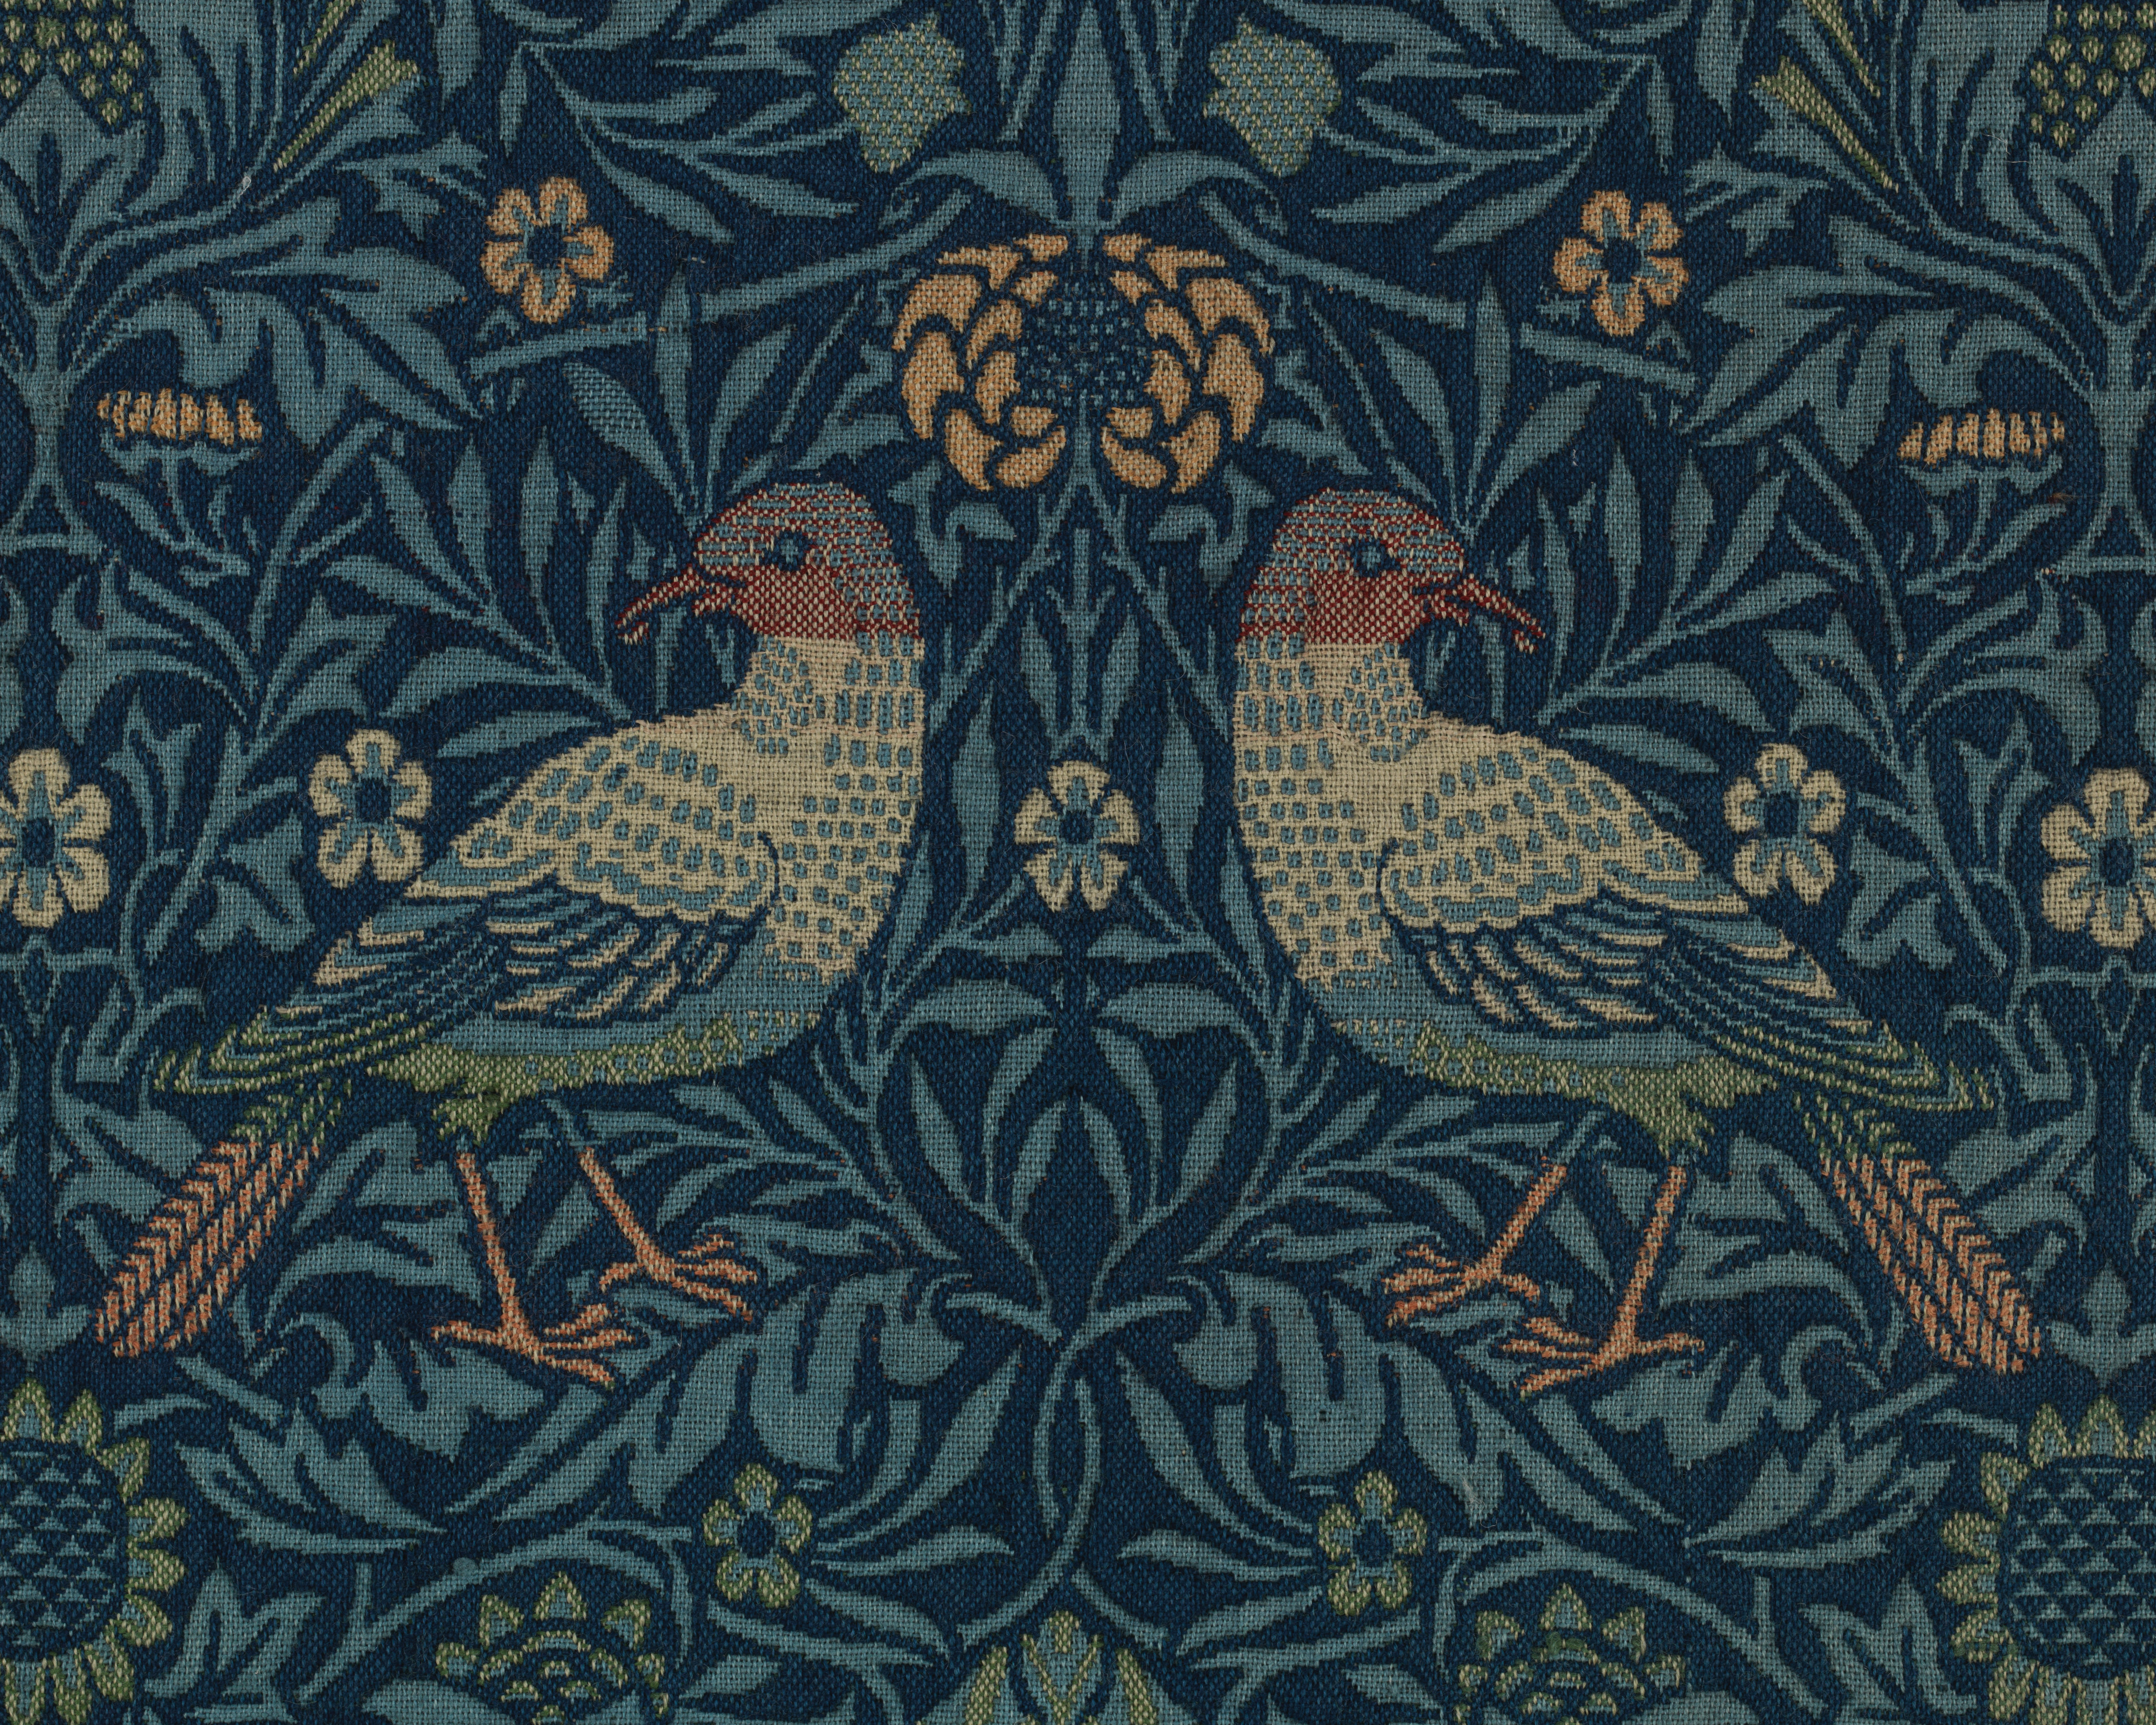 William Morris Owl and Pigeon